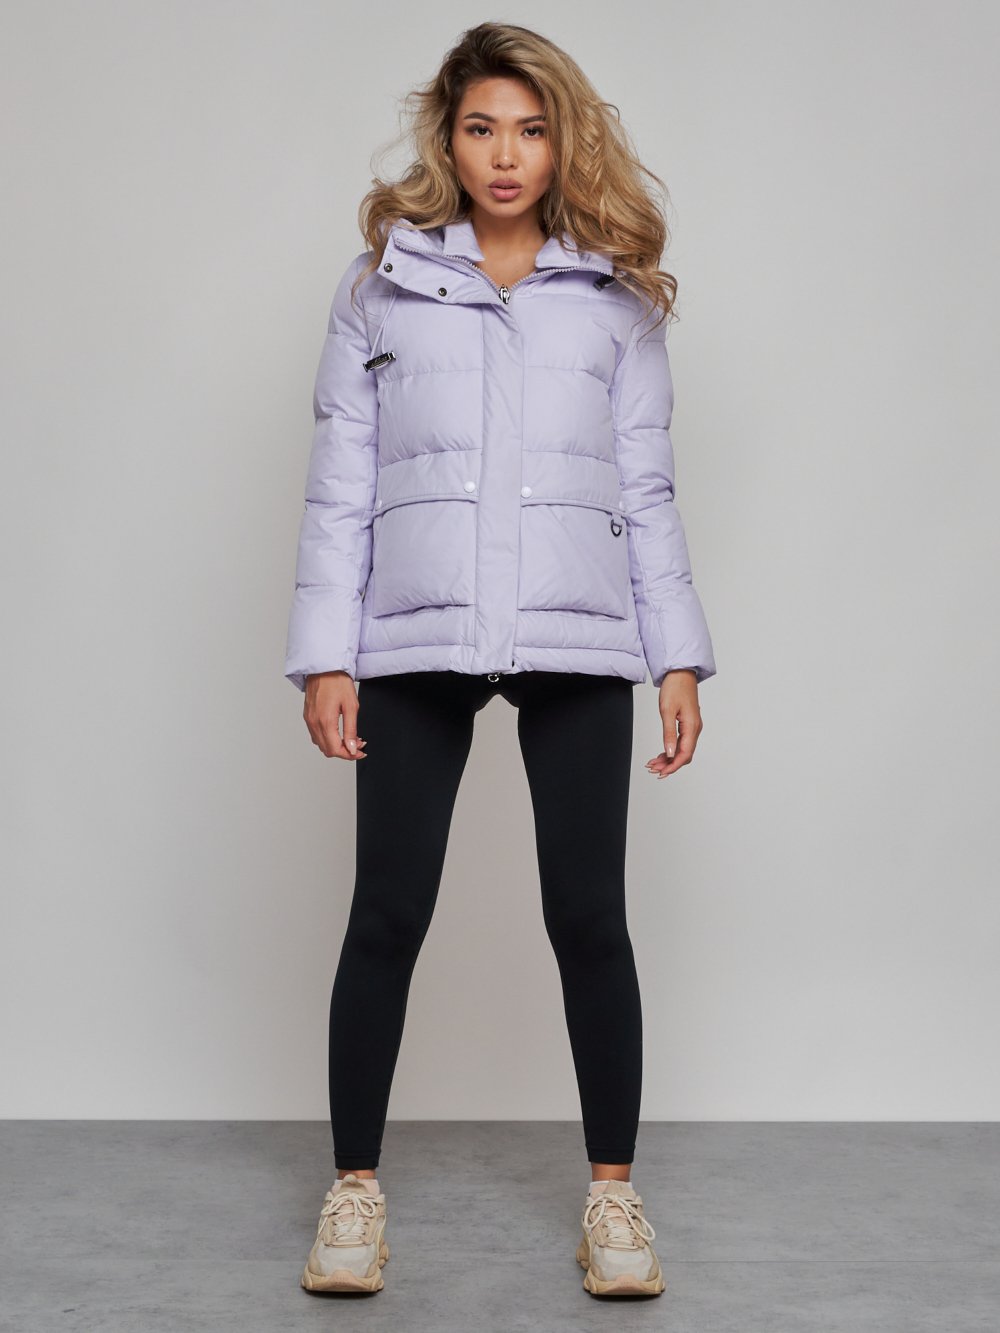 Купить куртку зимнюю оптом от производителя недорого в Москве 52303F